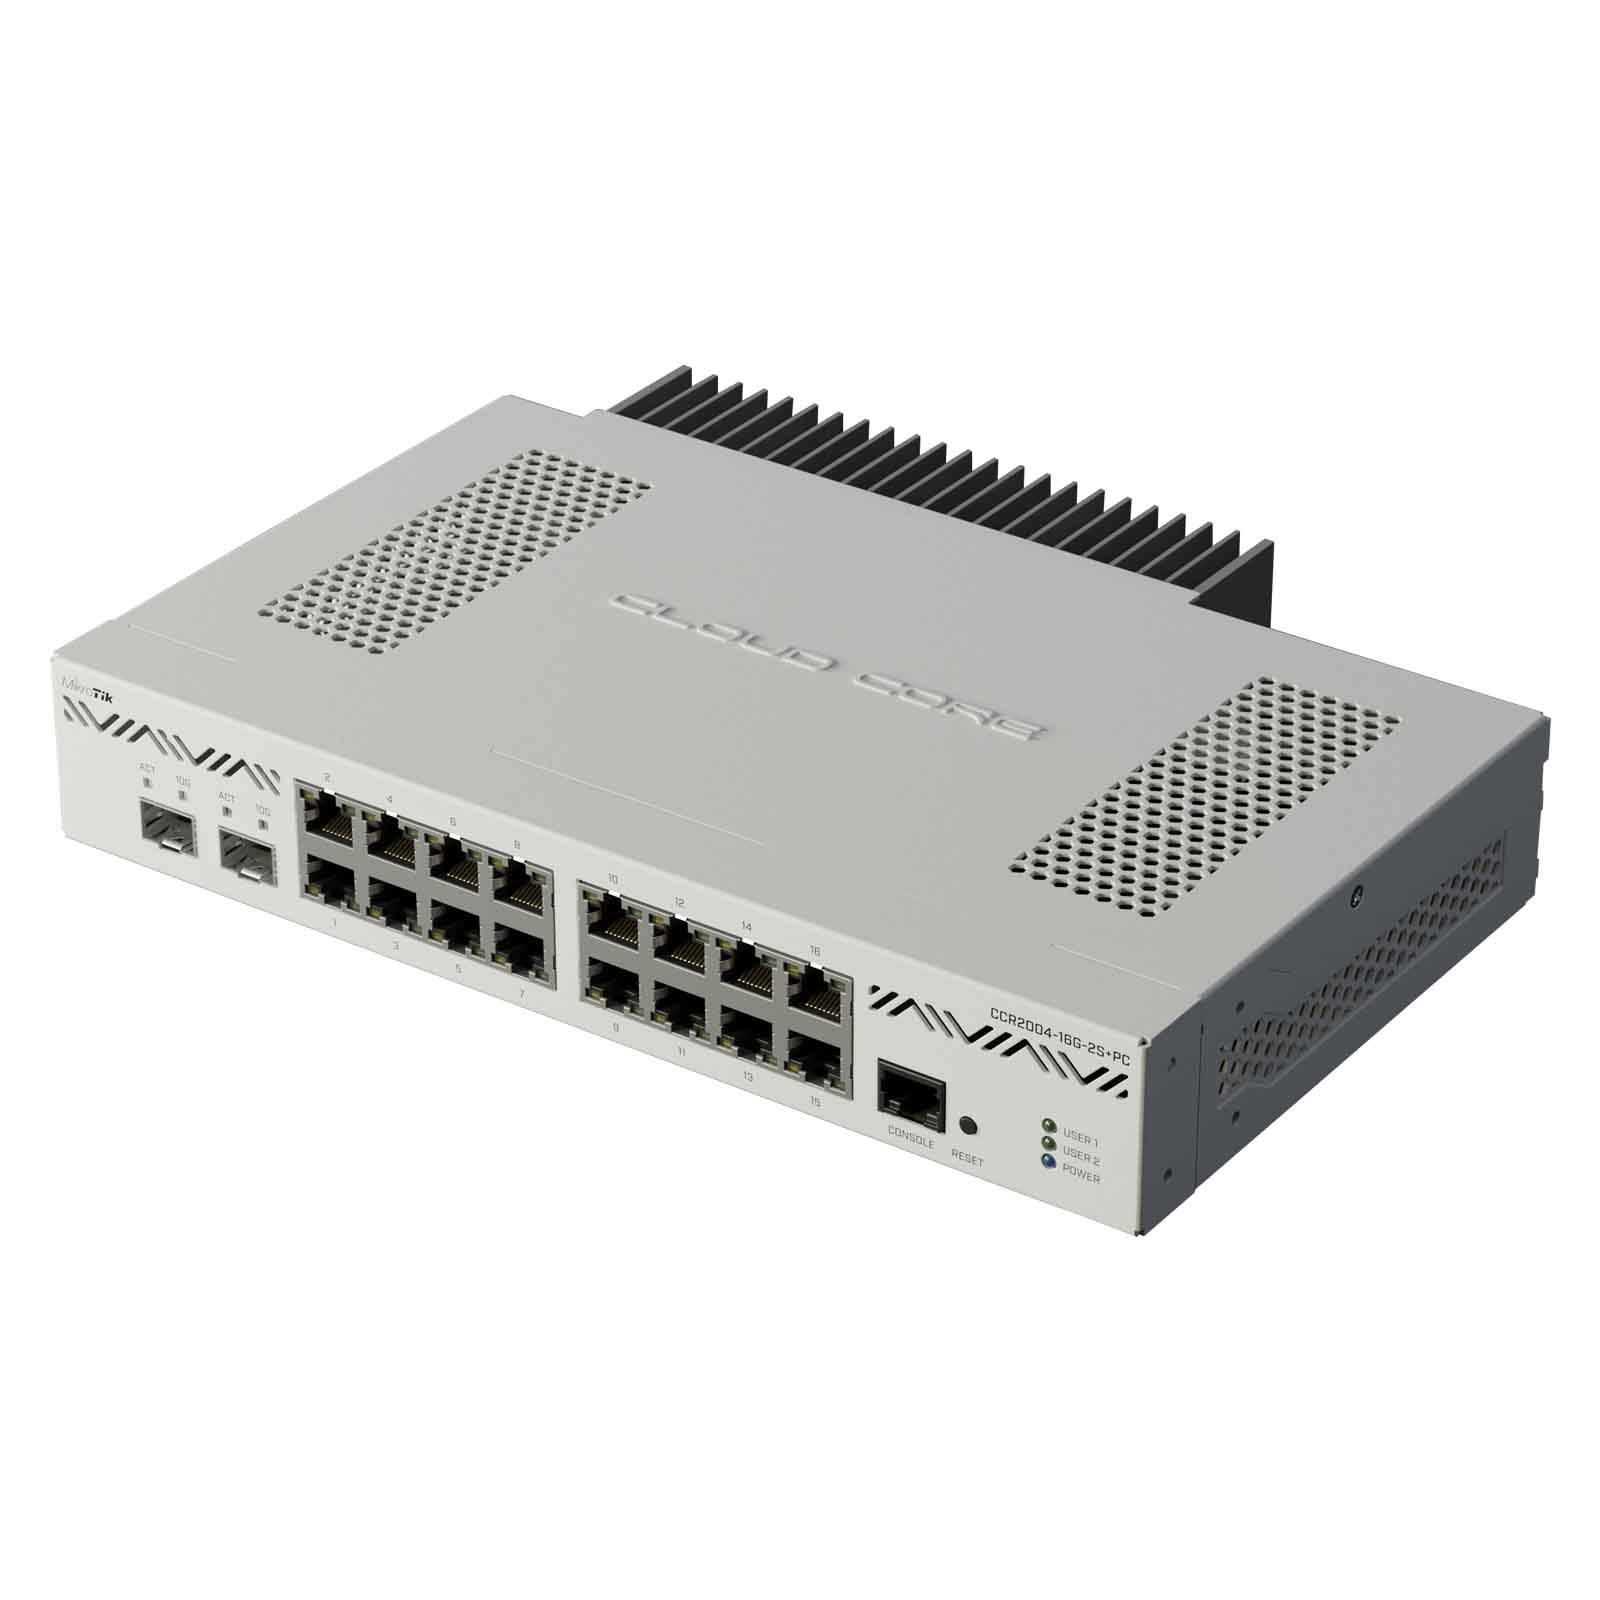 MikroTik Cloud Core Router CCR2004-16G-2S+PC